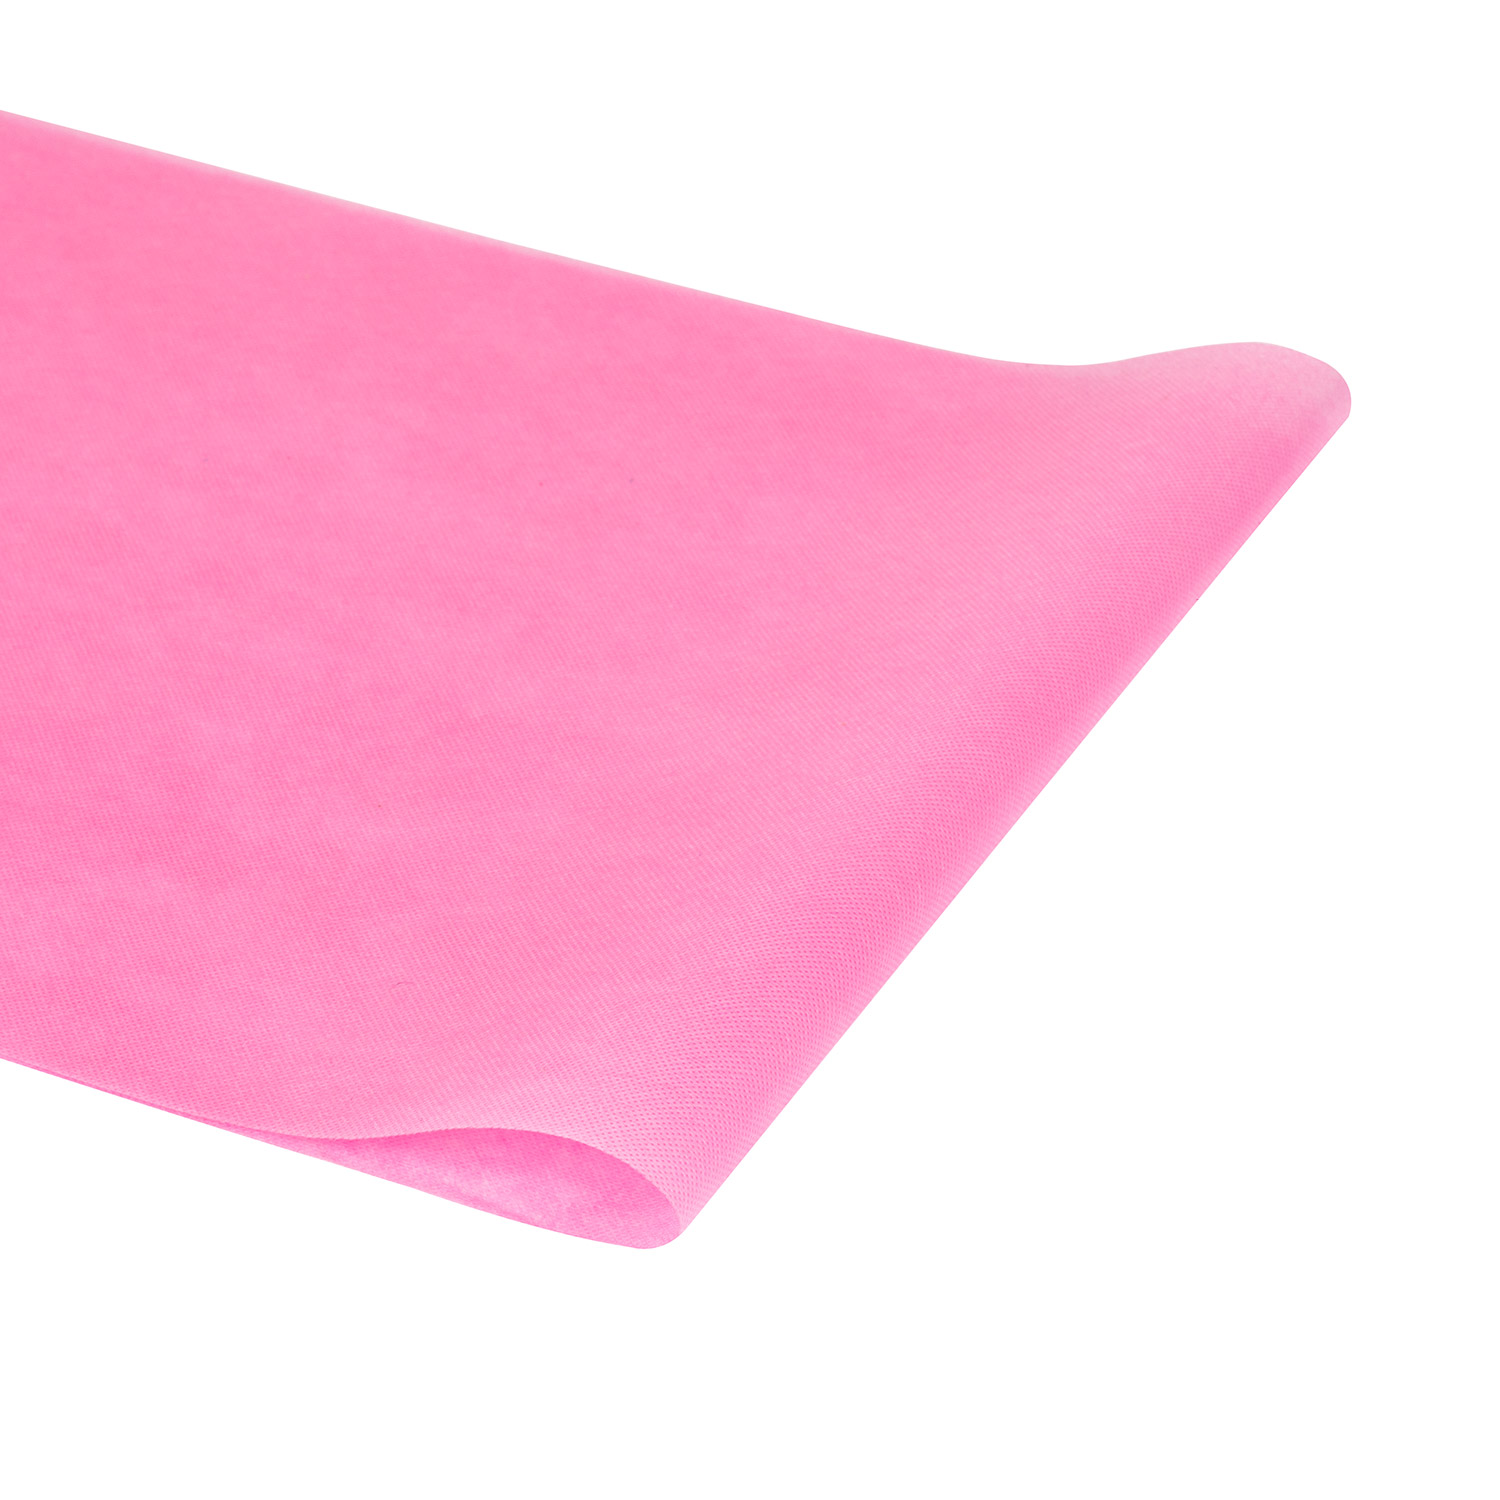 Tessuto non tessuto non tessuto spunbonded rosa riciclato per ornamento